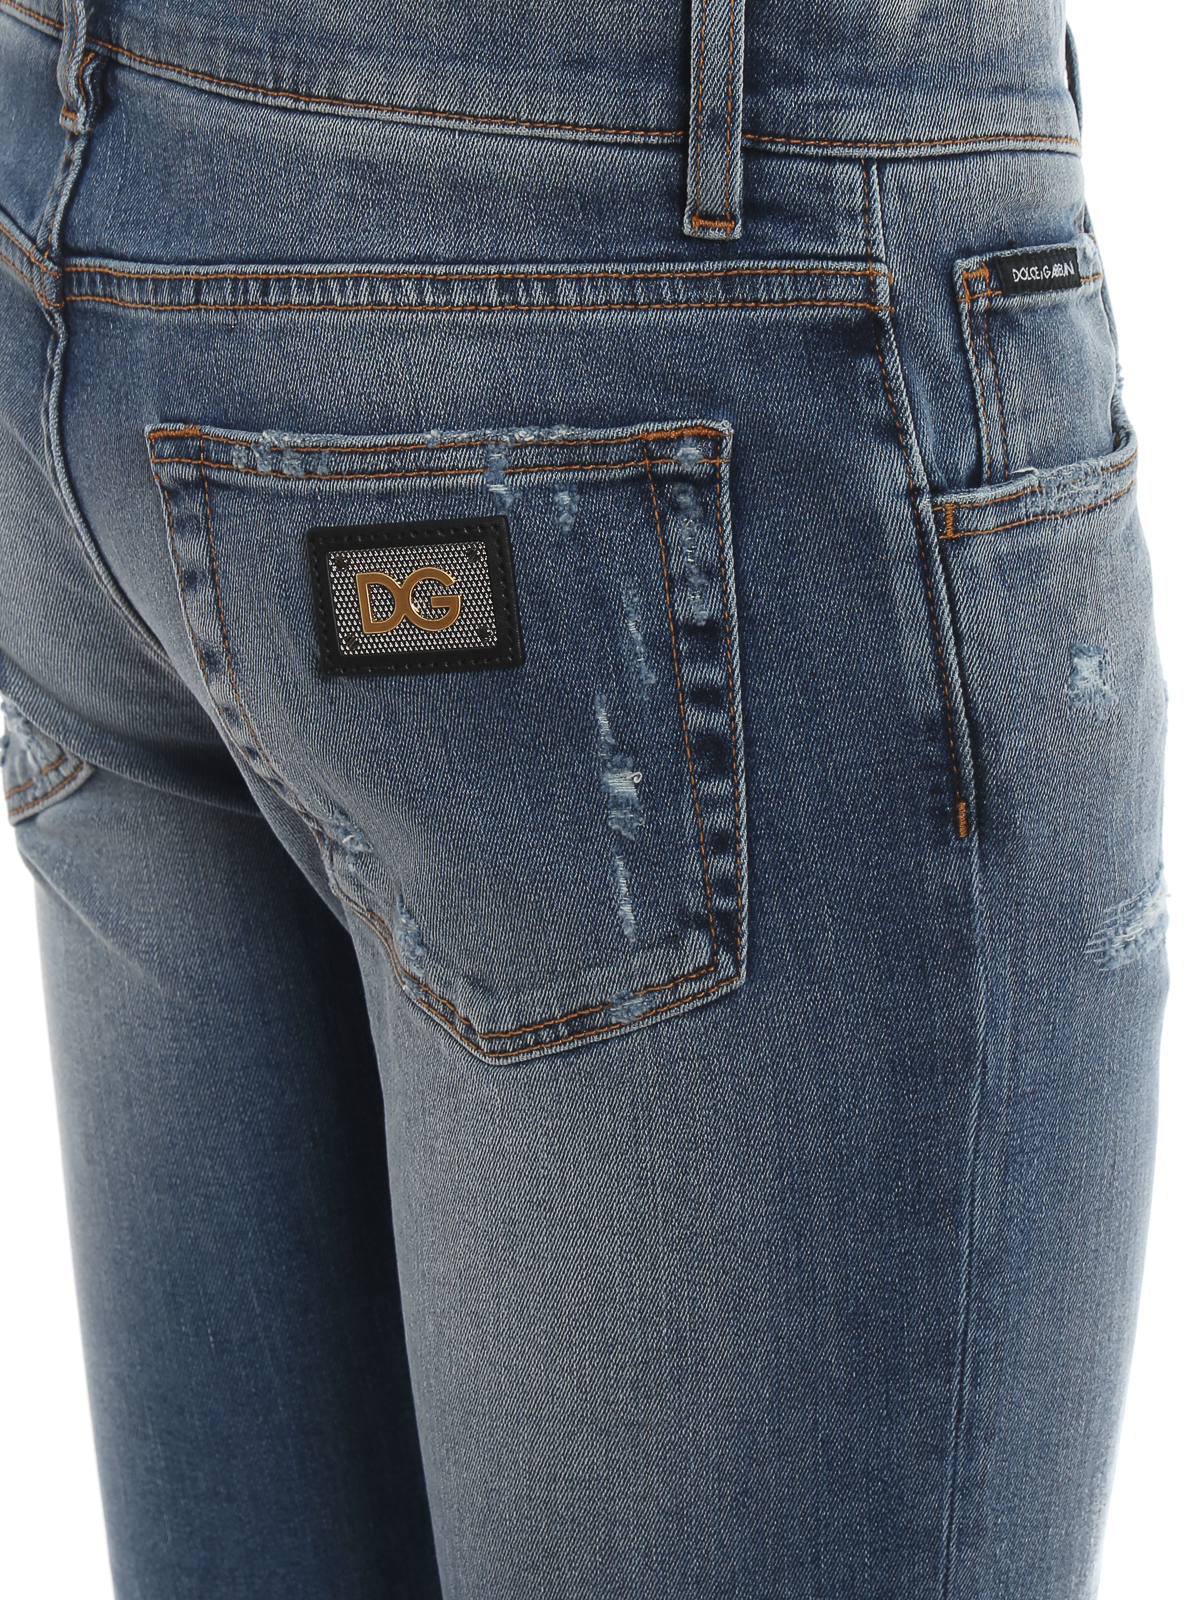 Distressed denim five pocket jeans 